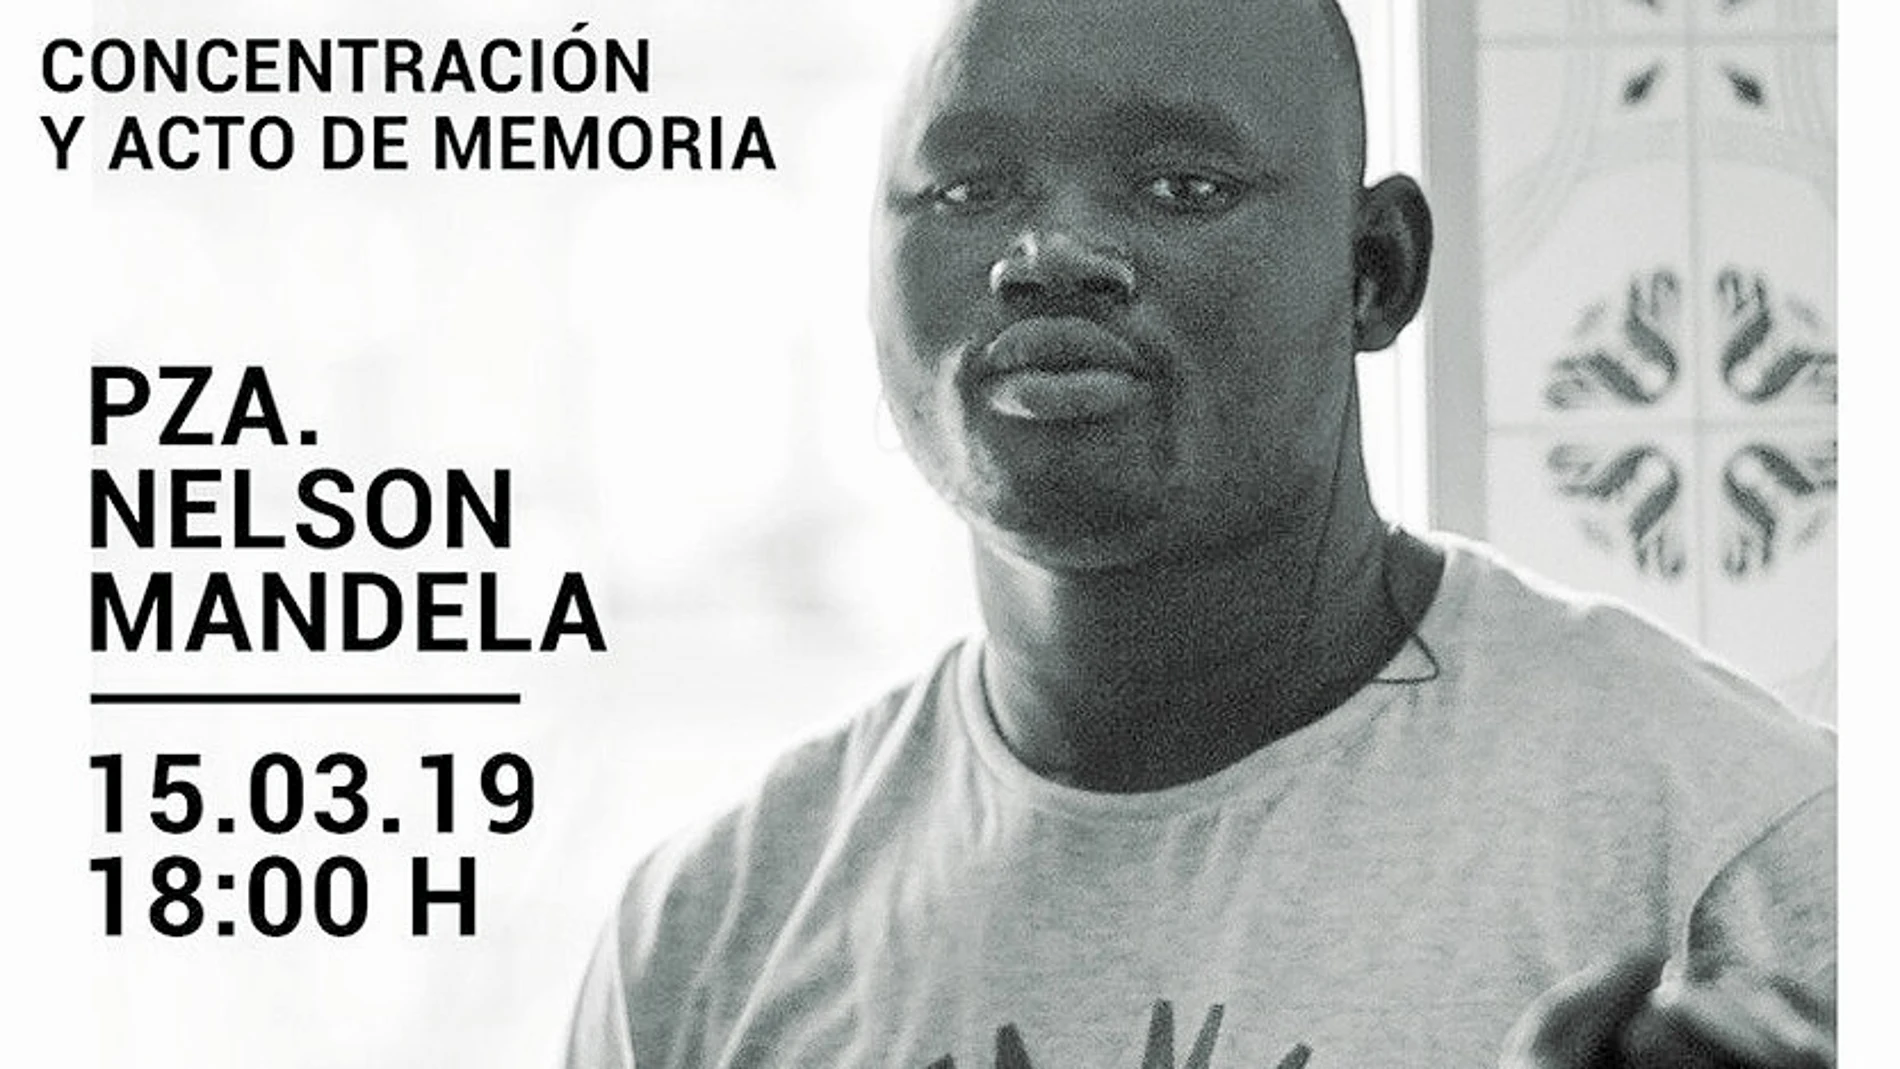 El sindicato de manteros promueve una concentración para el próximo viernes en la plaza Nelson Mandela para recordar a Mame Mbay